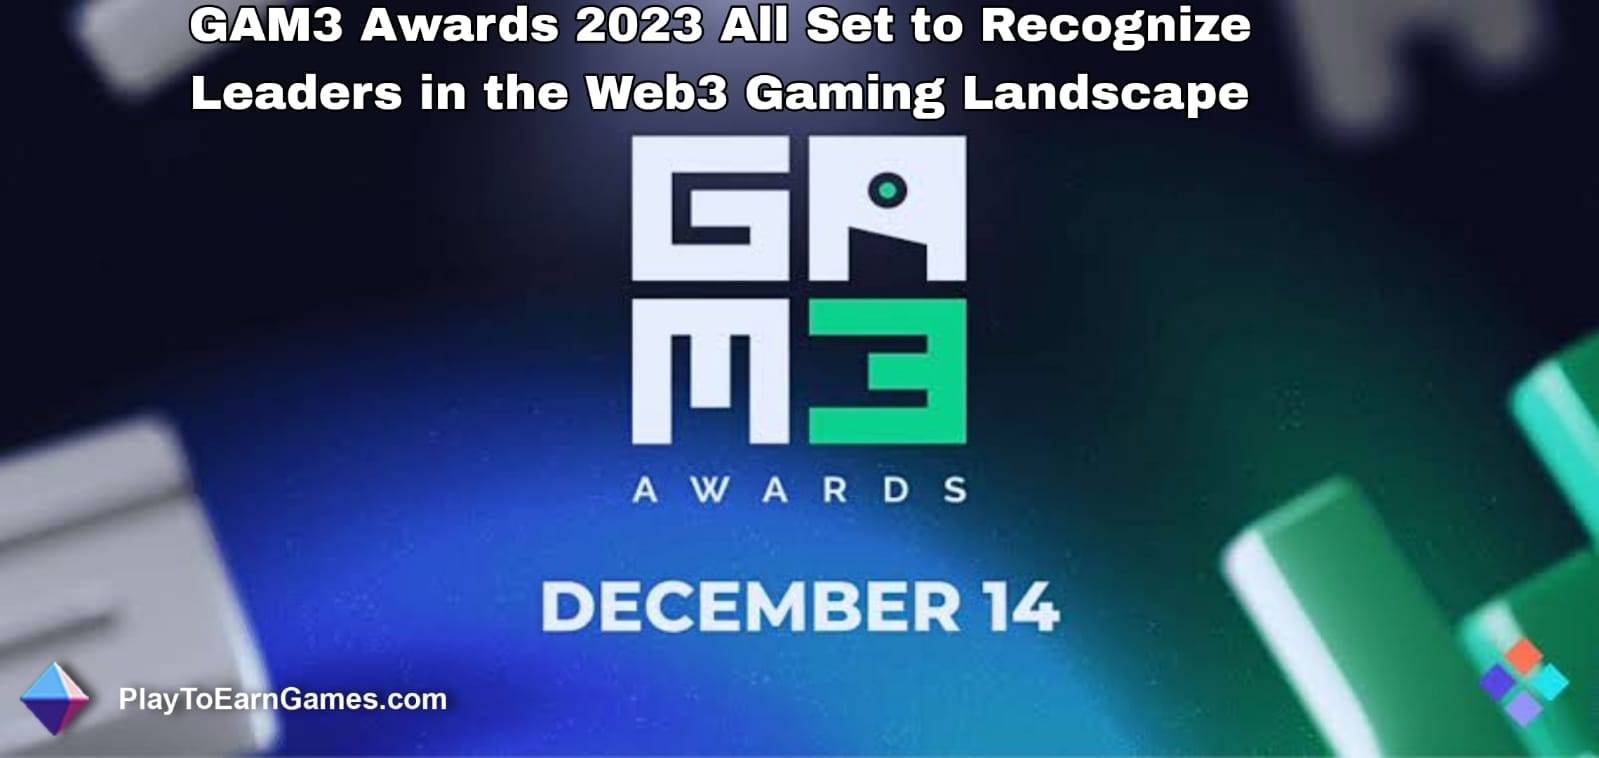 Los premios GAM3 2023 están listos para reconocer a los líderes en el panorama de los juegos Web3